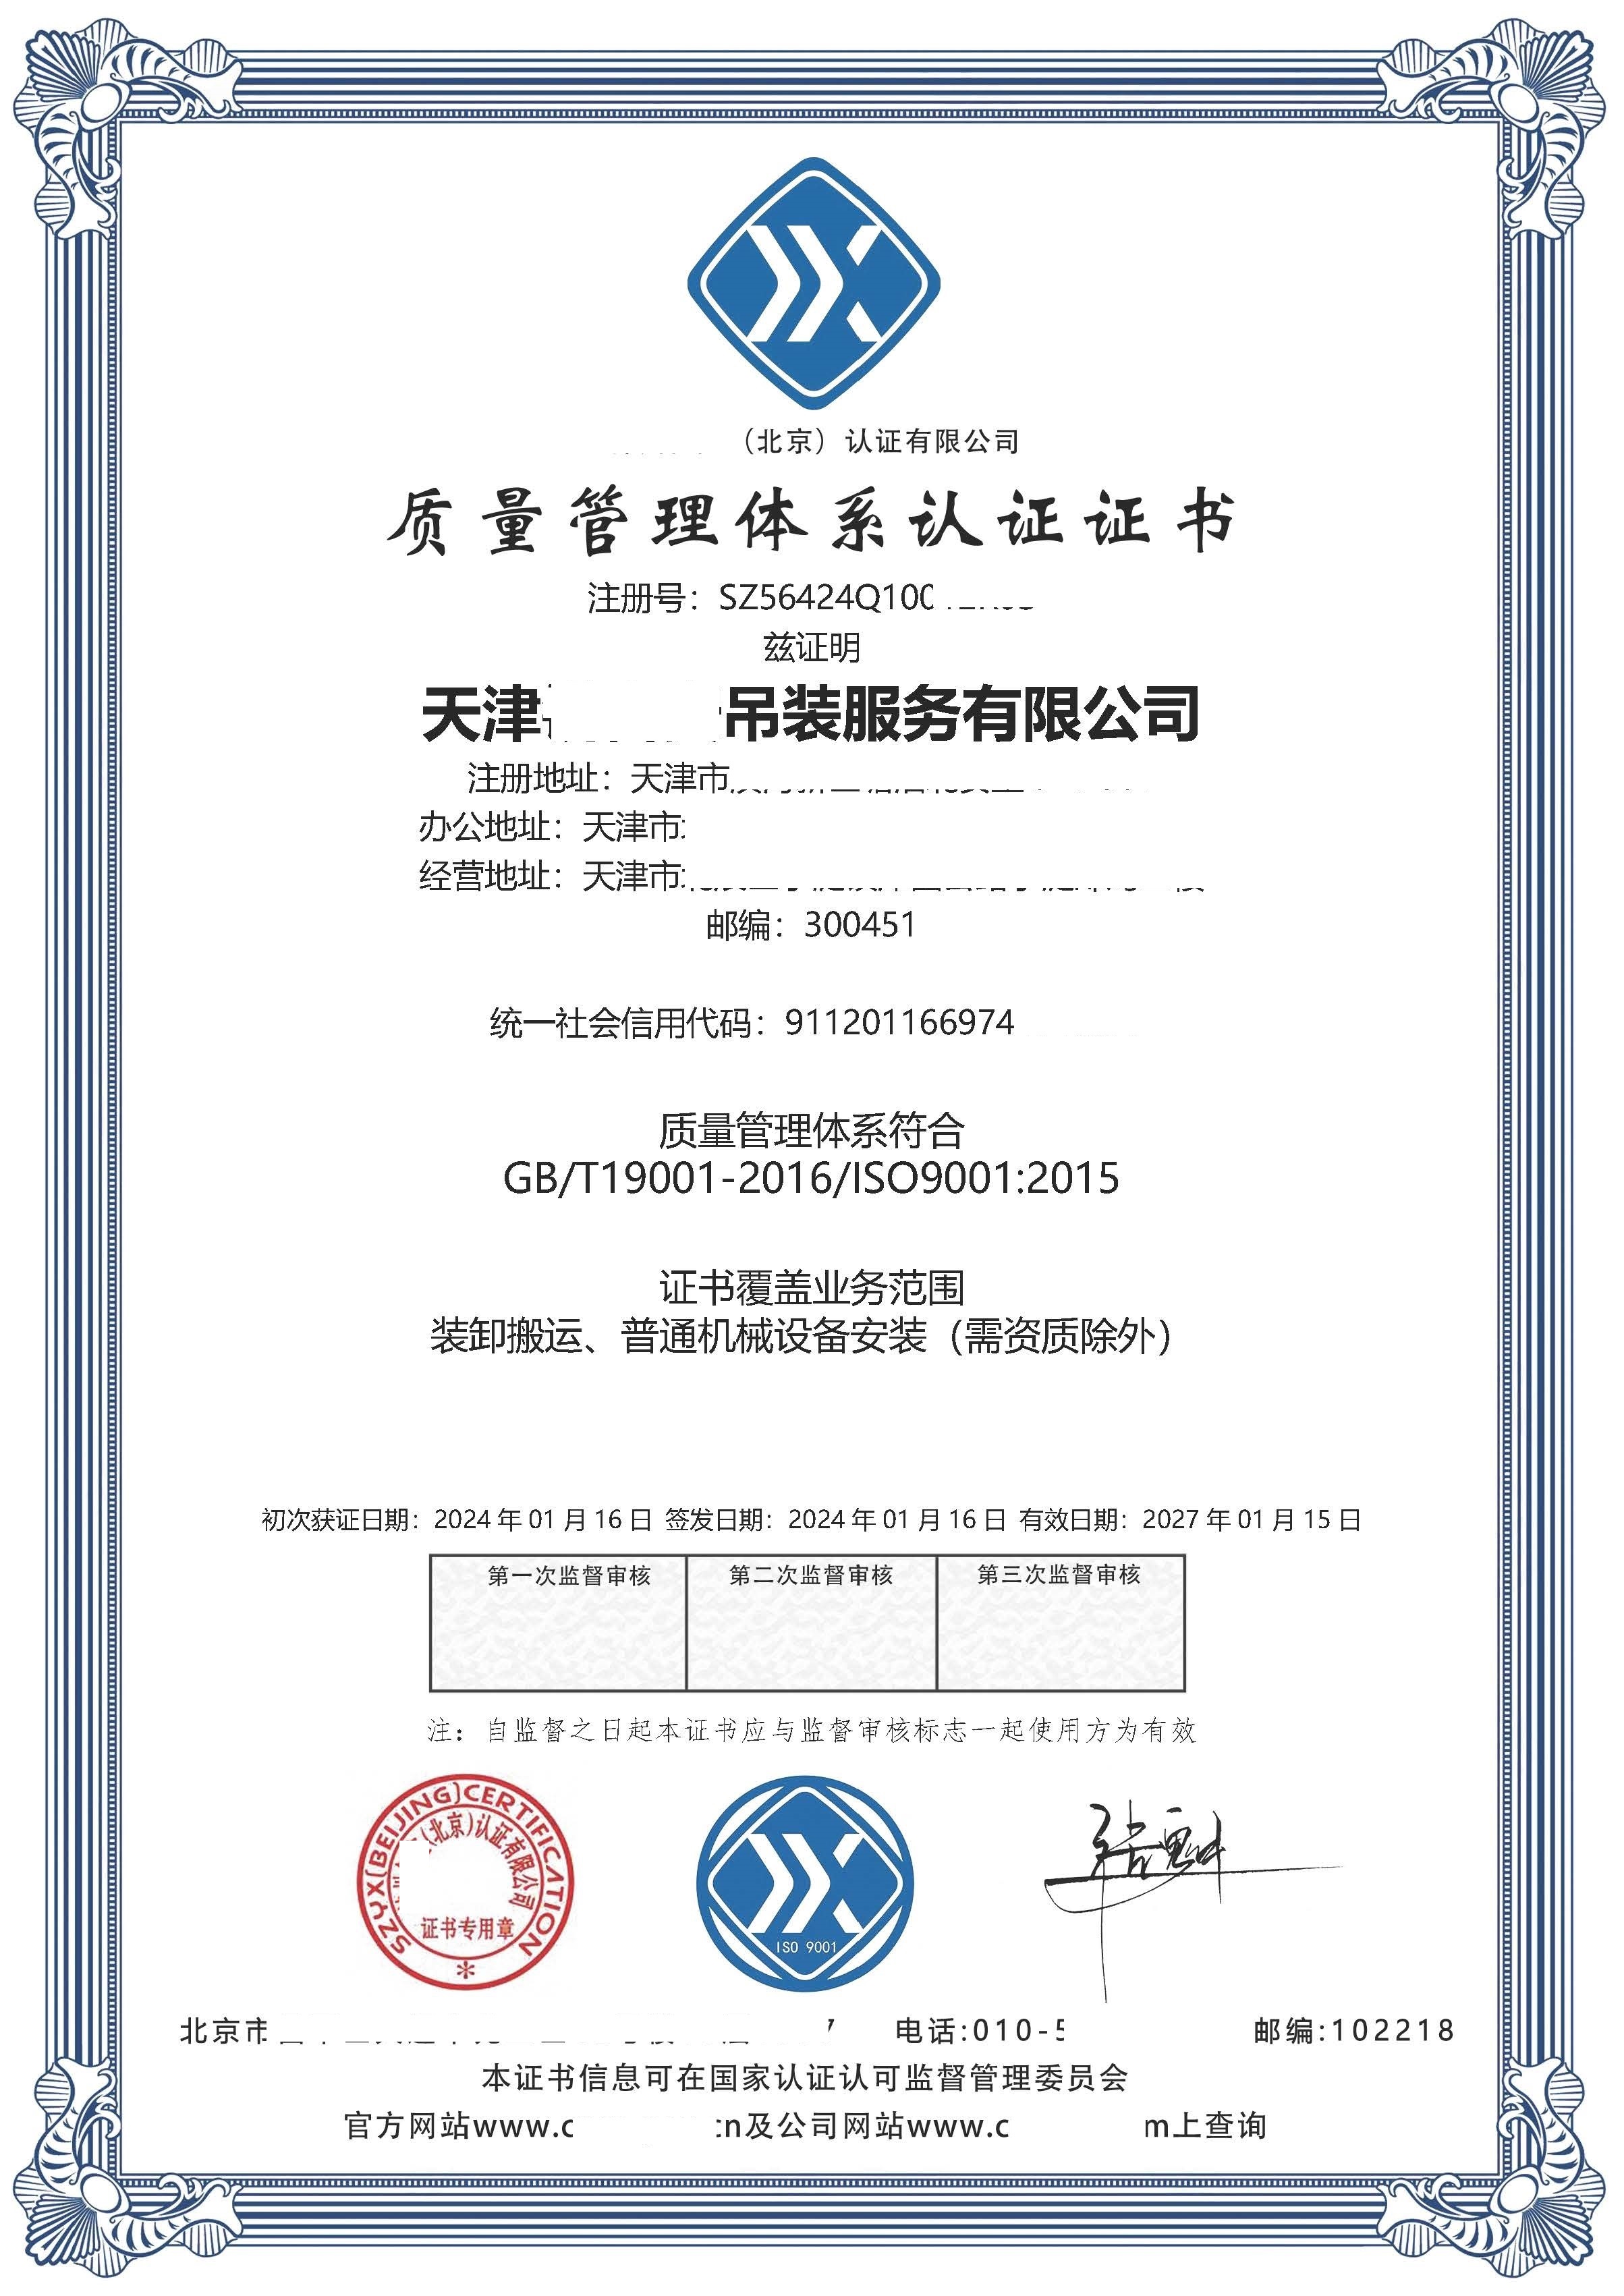 恭喜  天津***吊装服务有限公司  获得ISO9001质量管理体系认证证书